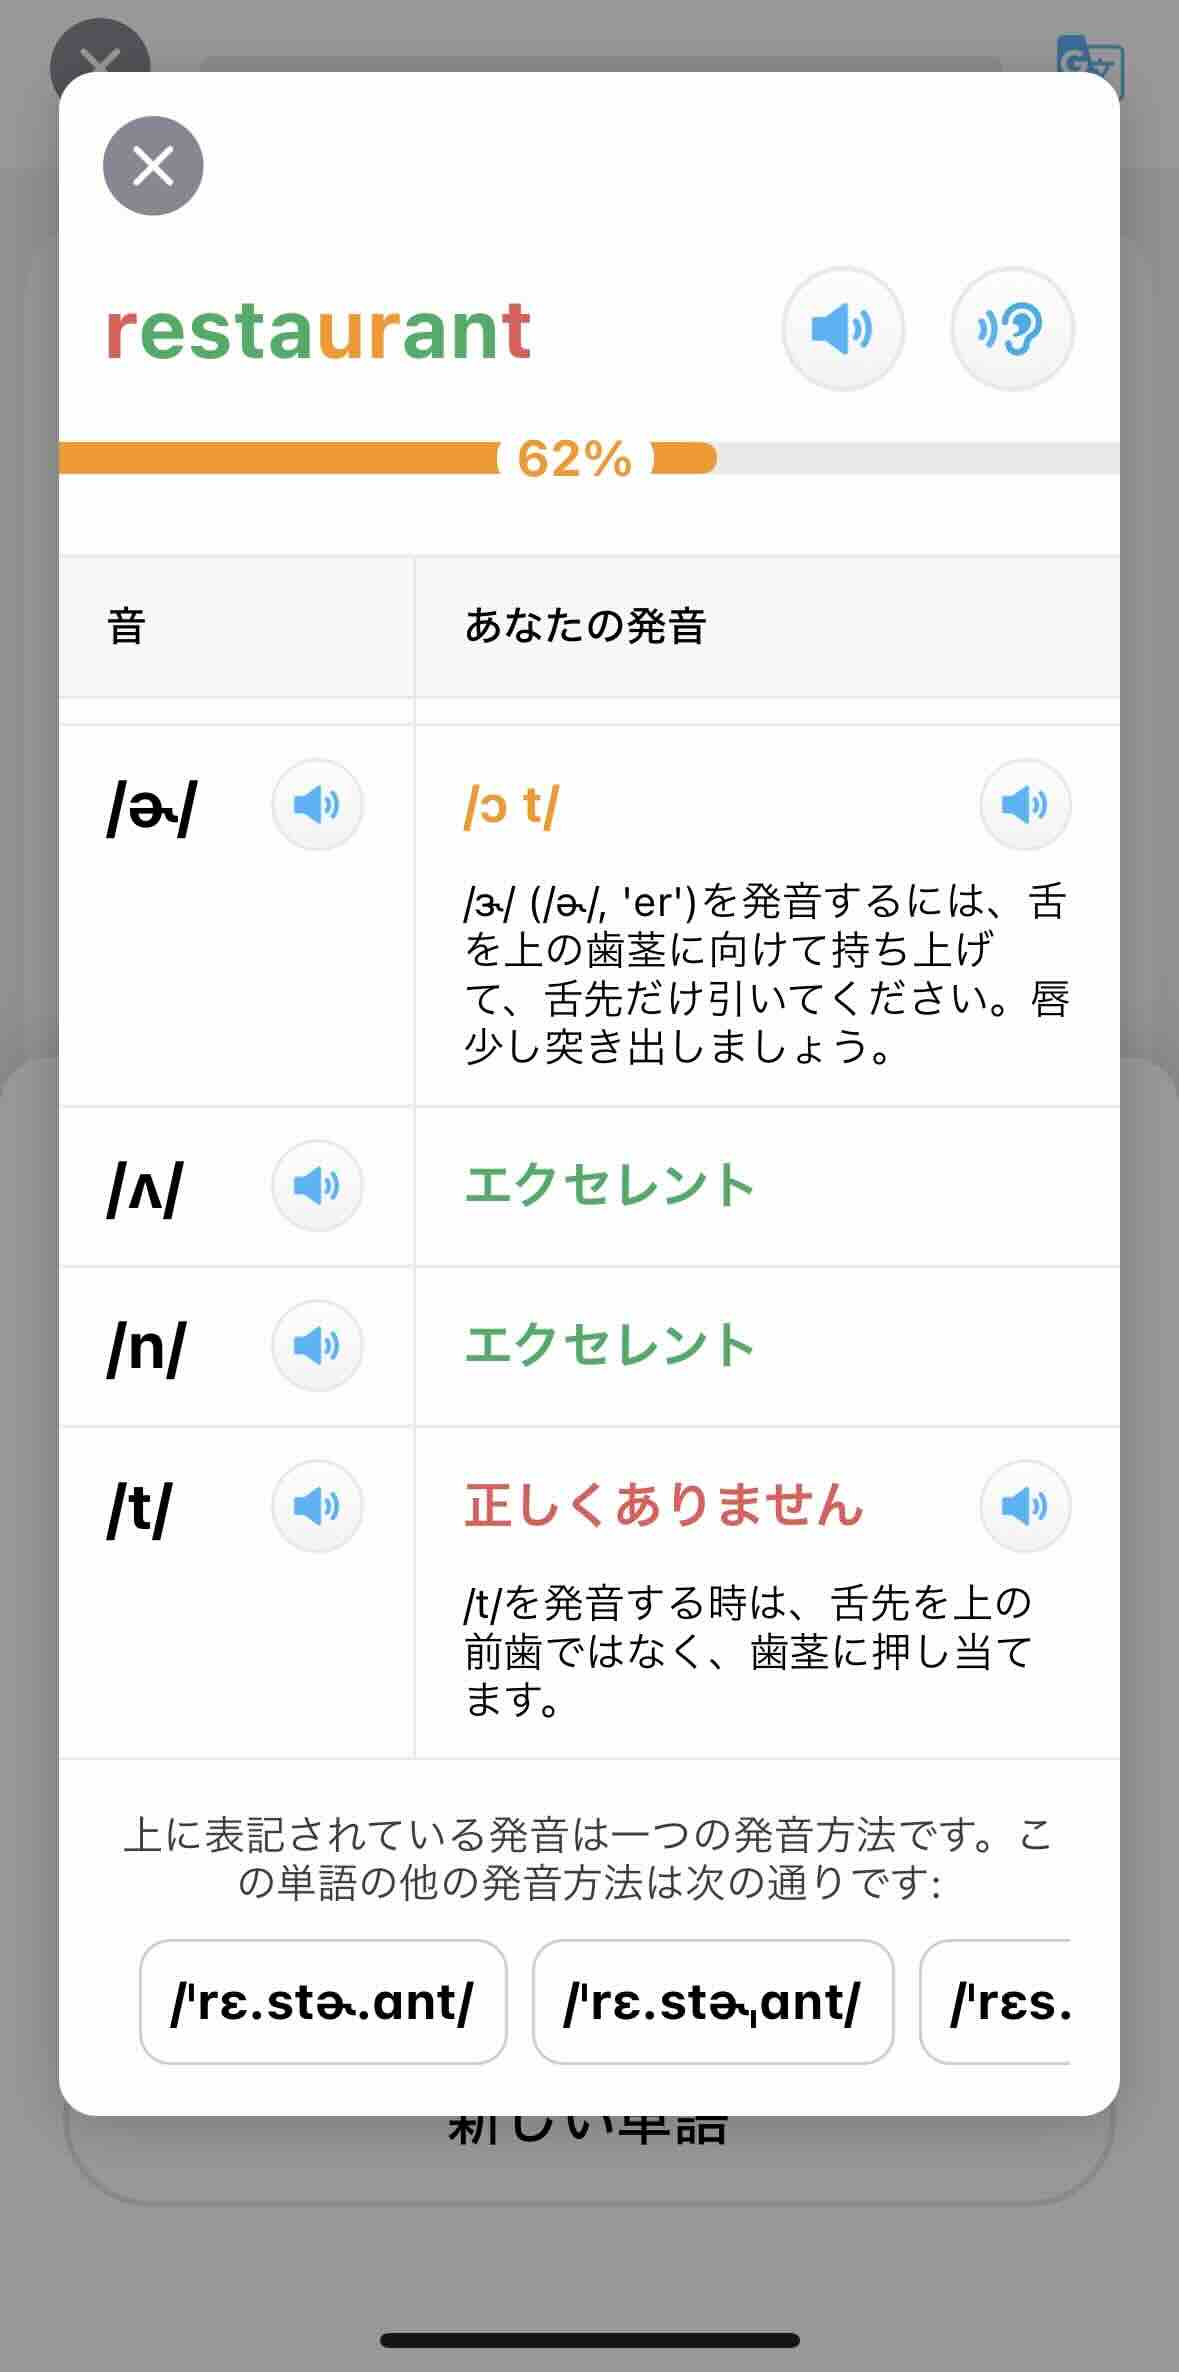 「レストラント」と日本語の発音で読んだ結果